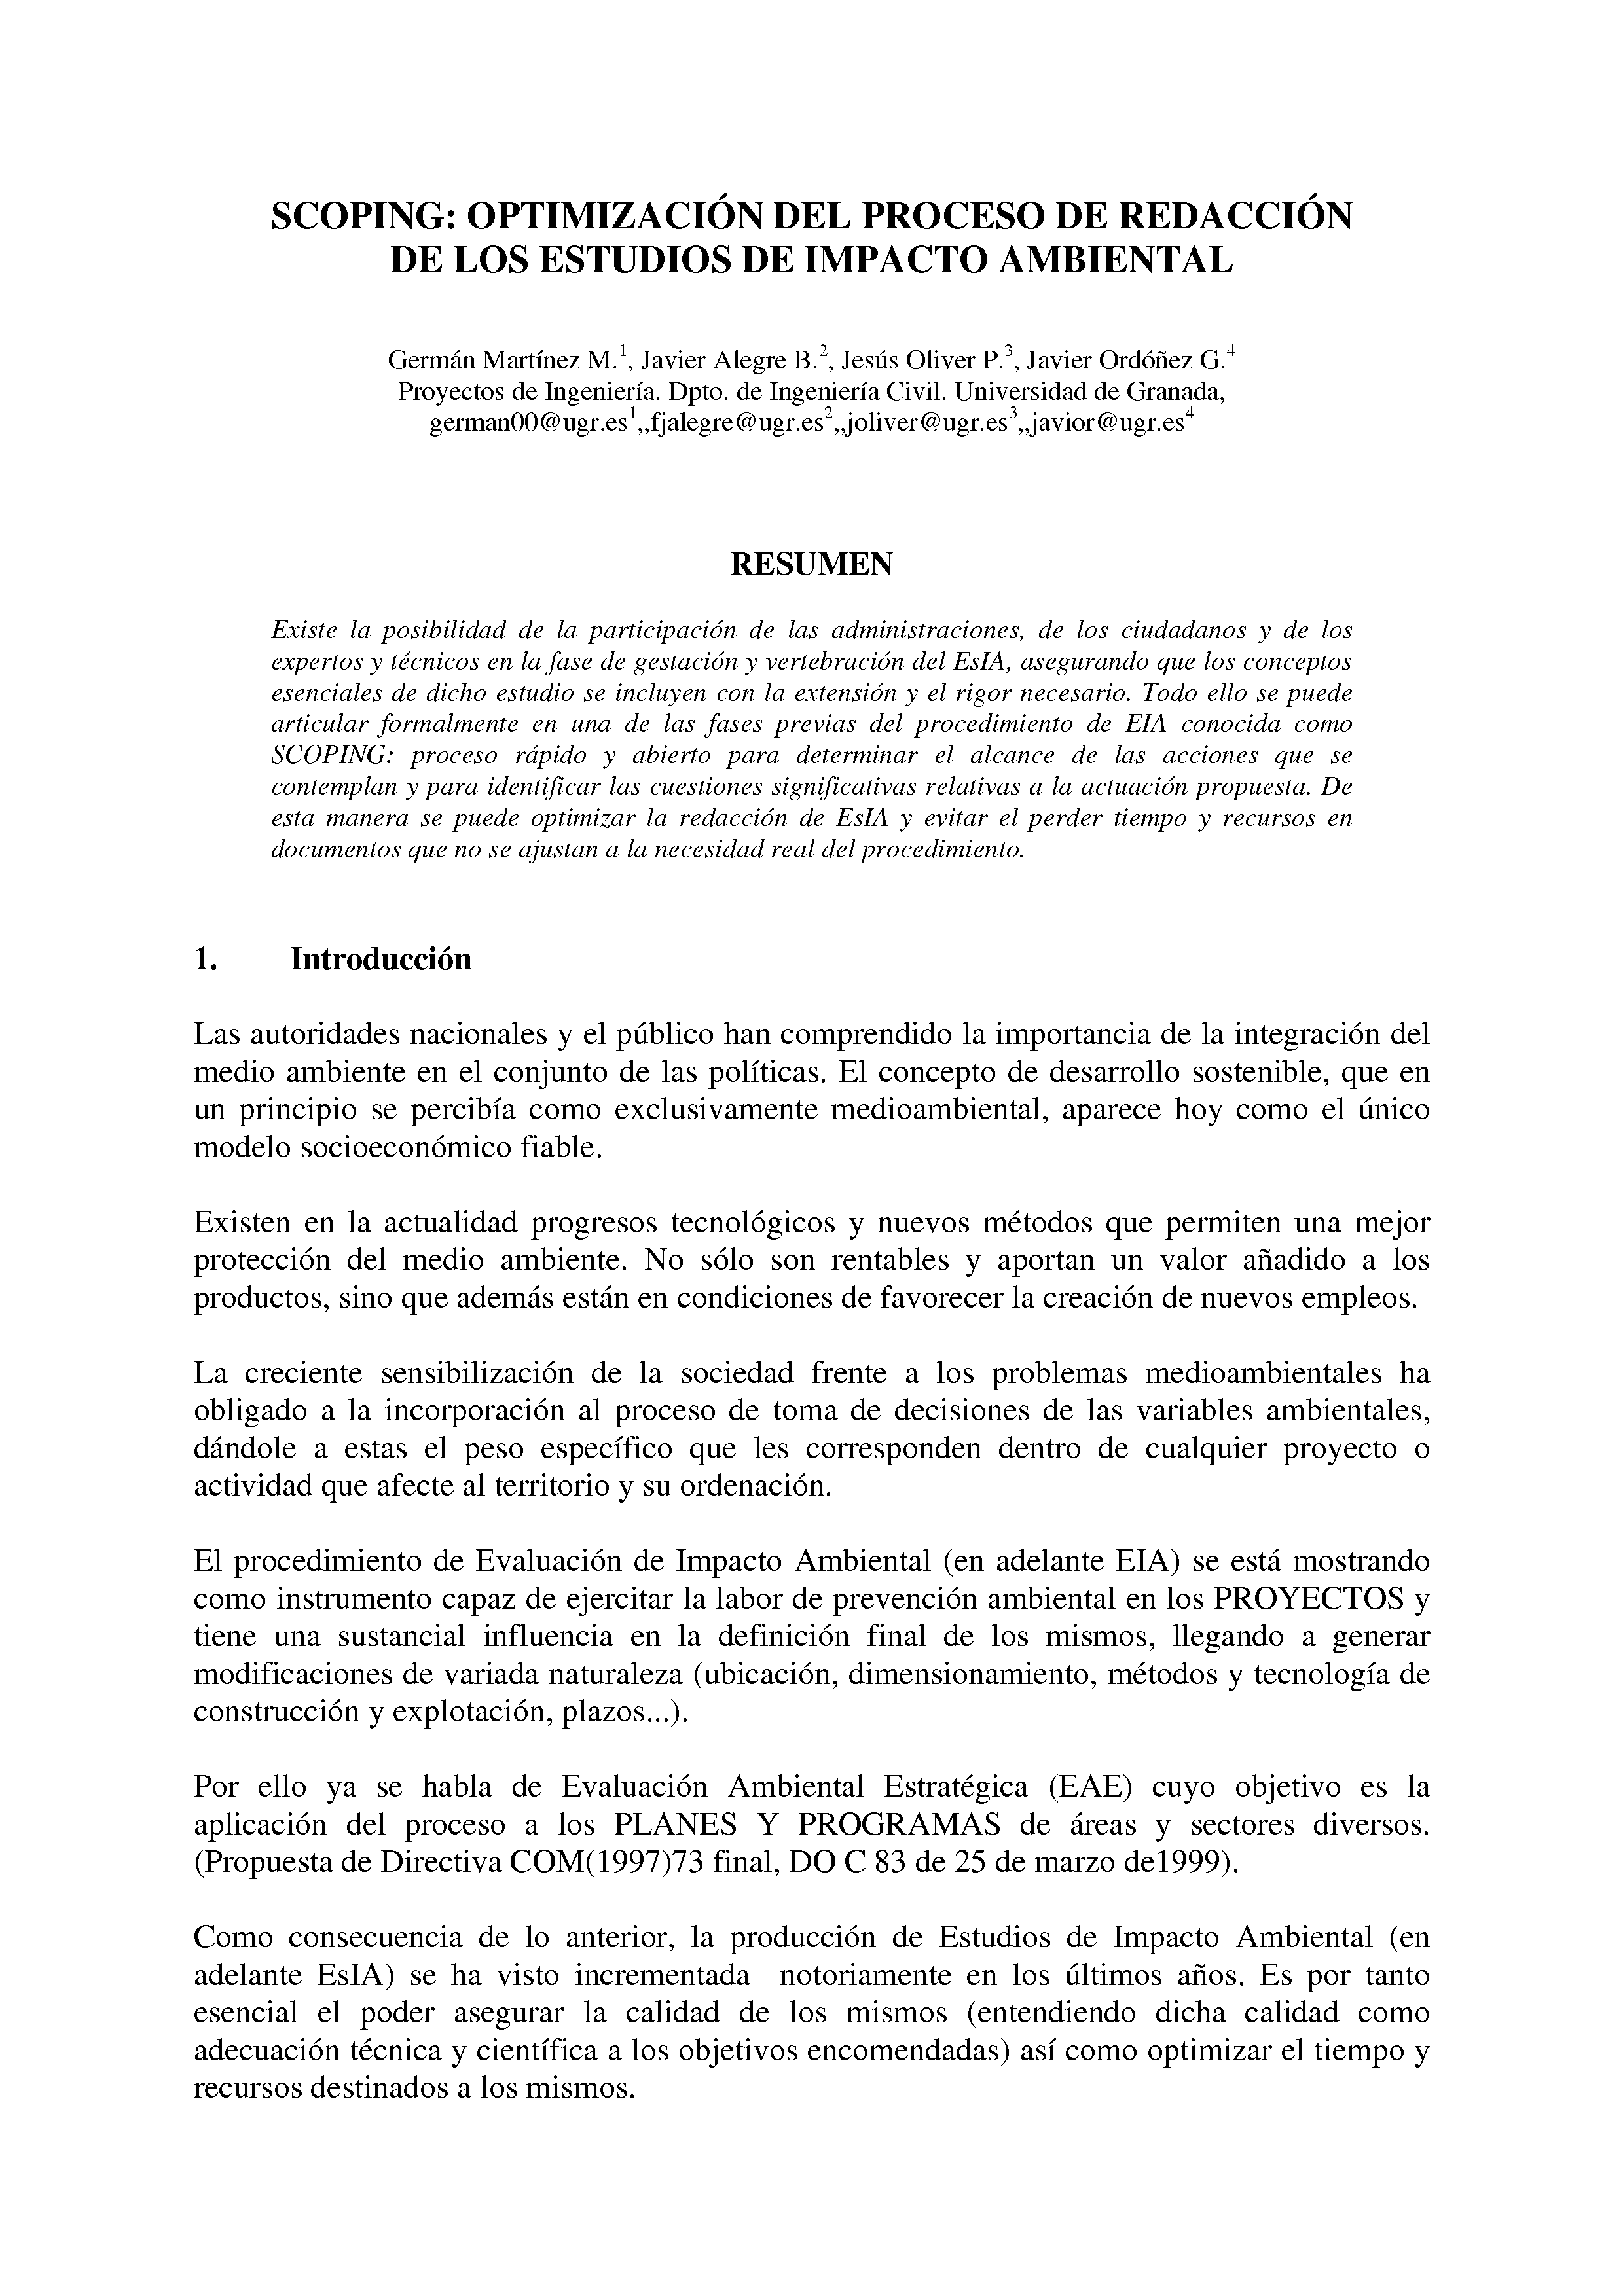 SCOPING: OPTIMIZACIÓN DEL PROCESO DE REDACCIÓN DE LOS ESTUDIOS DE IMPACTO AMBIENTAL